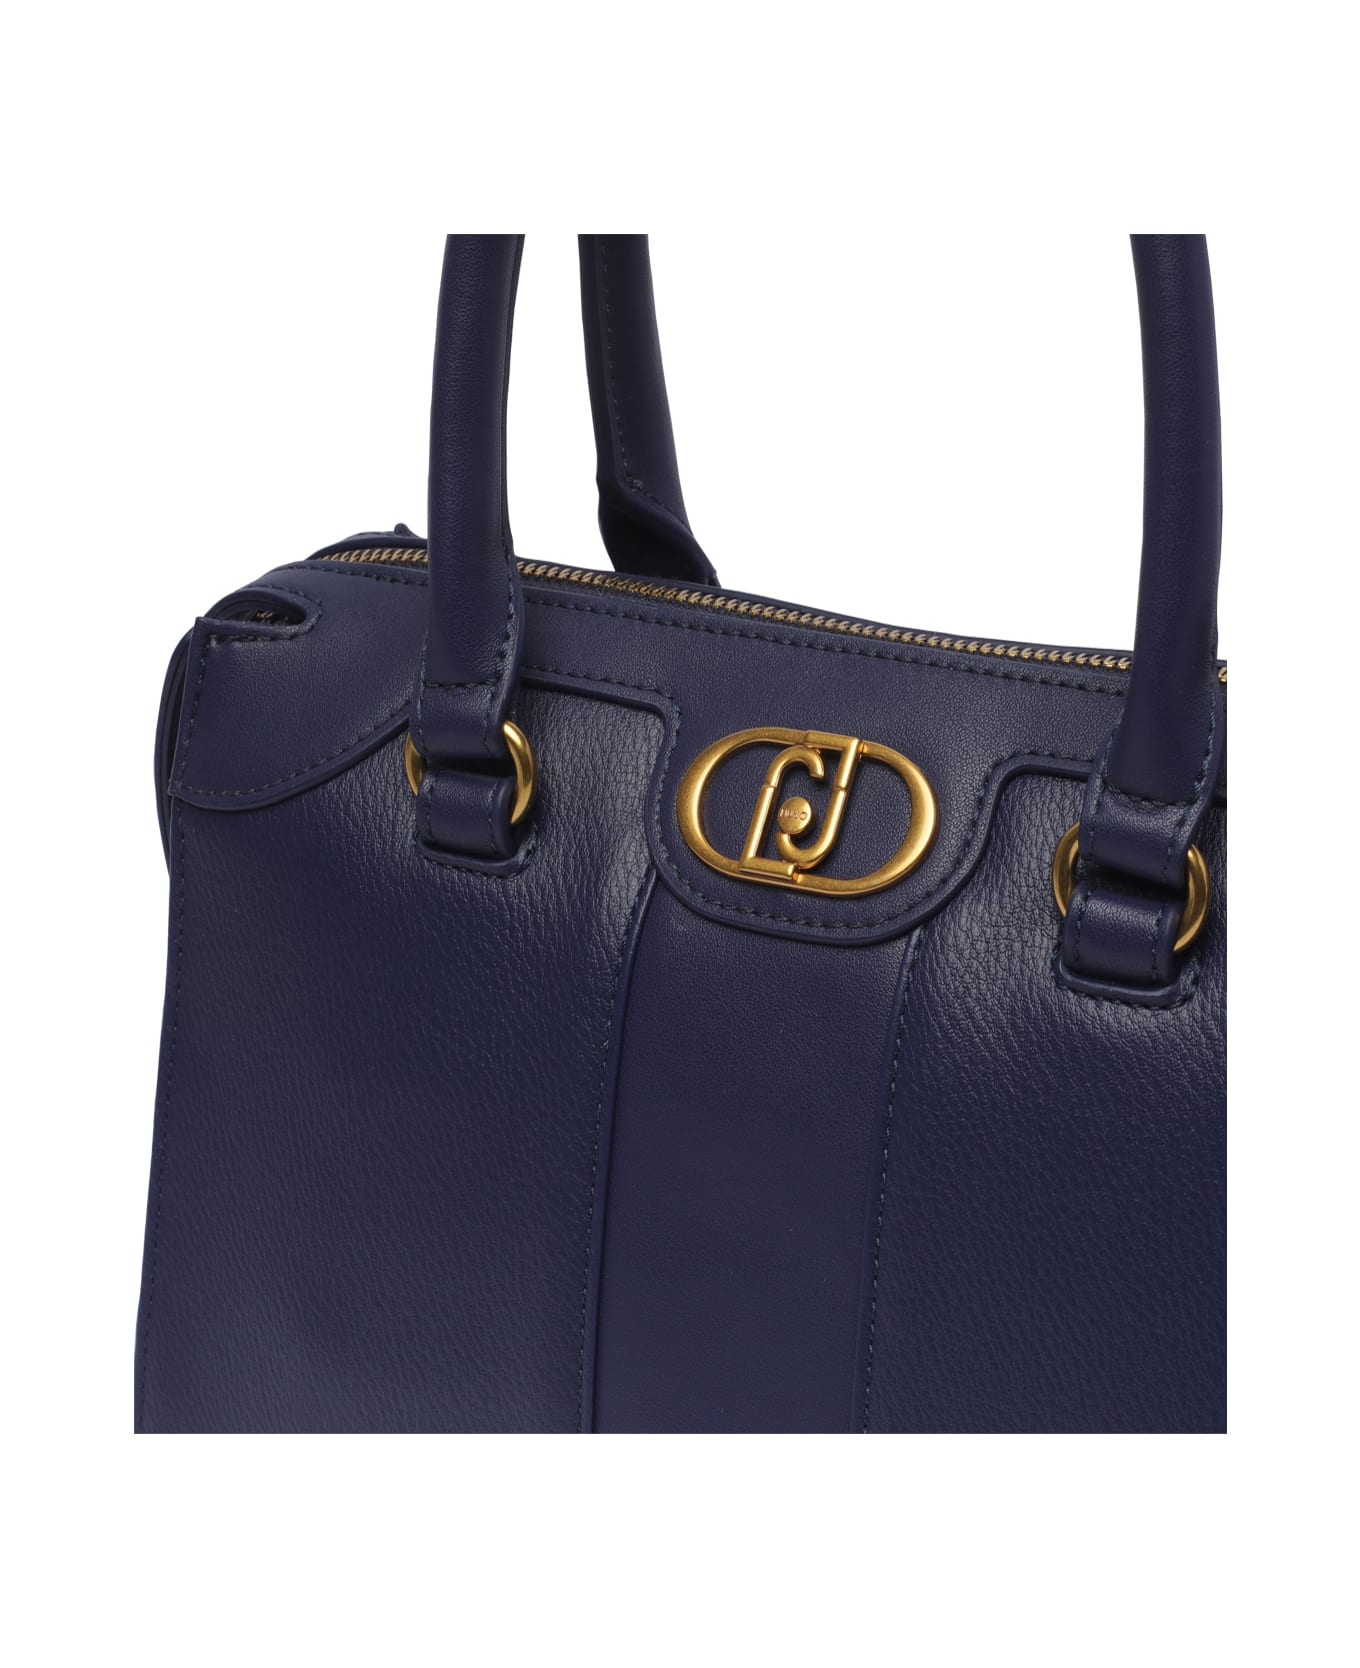 Liu-Jo Logo Handbag - Blue トートバッグ